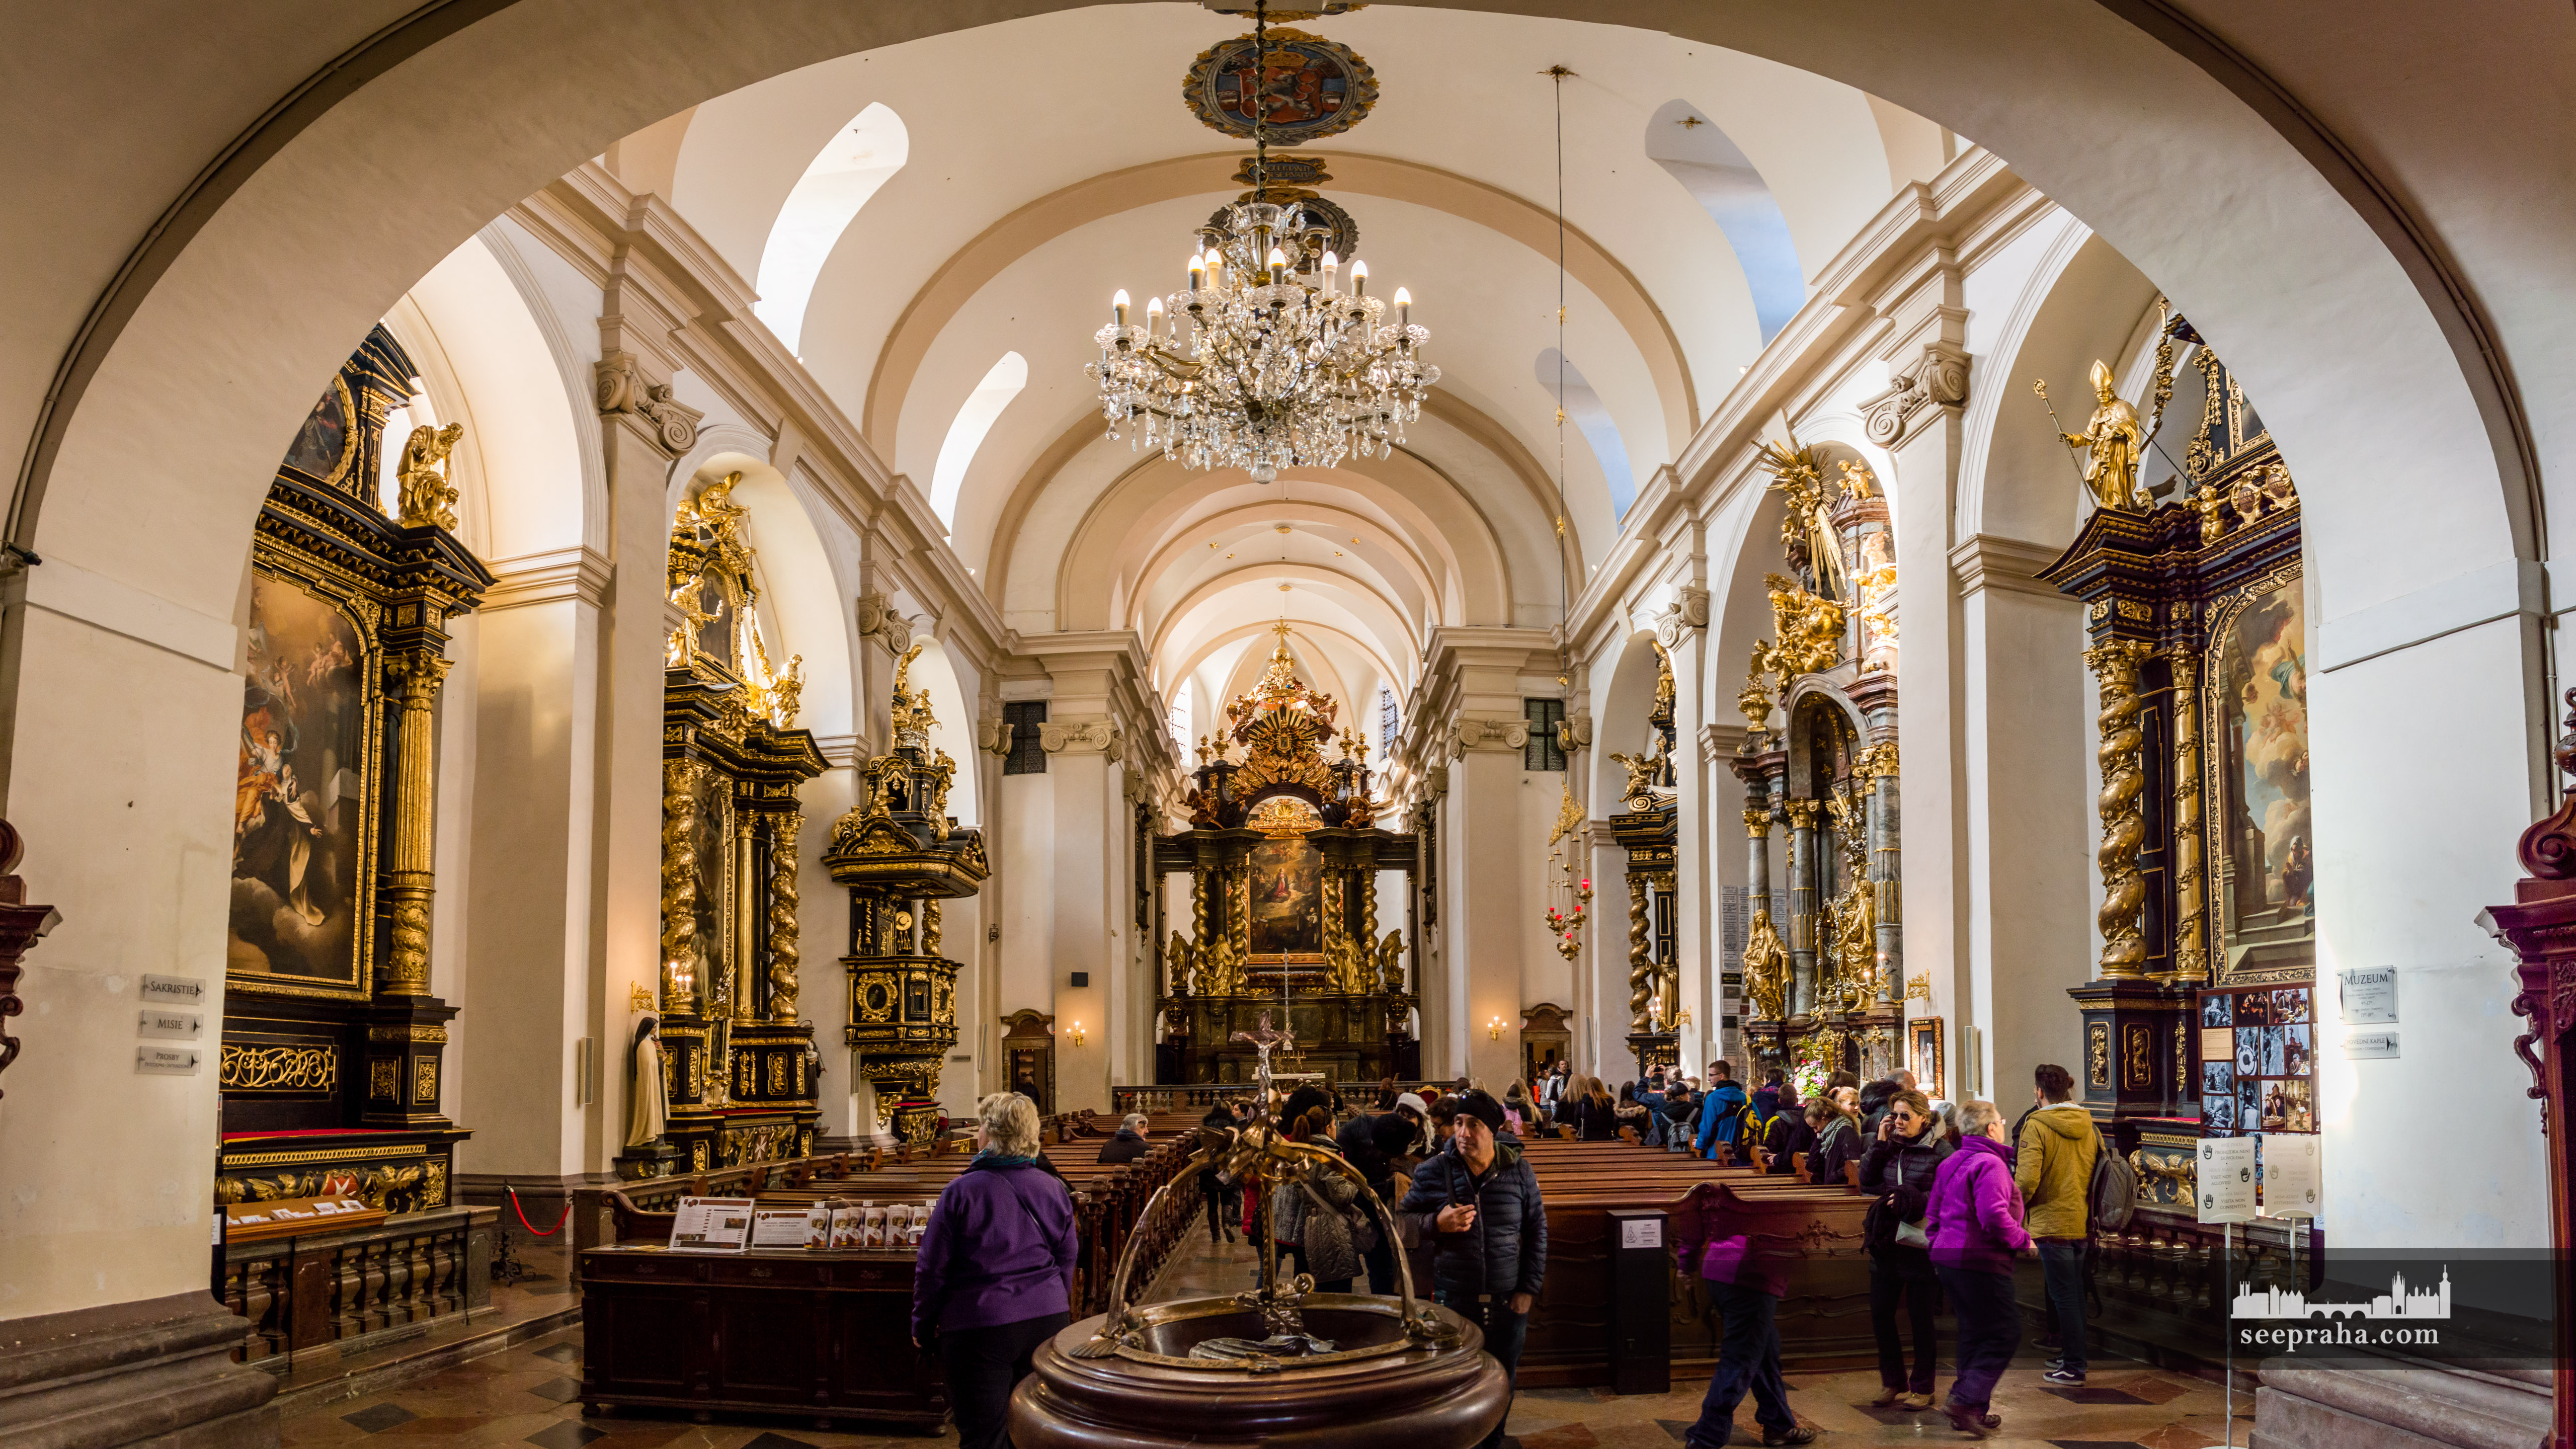 Die Innenansicht der Kirche der gewinnbringende Jungfrau Maria, Prag, Tschechien